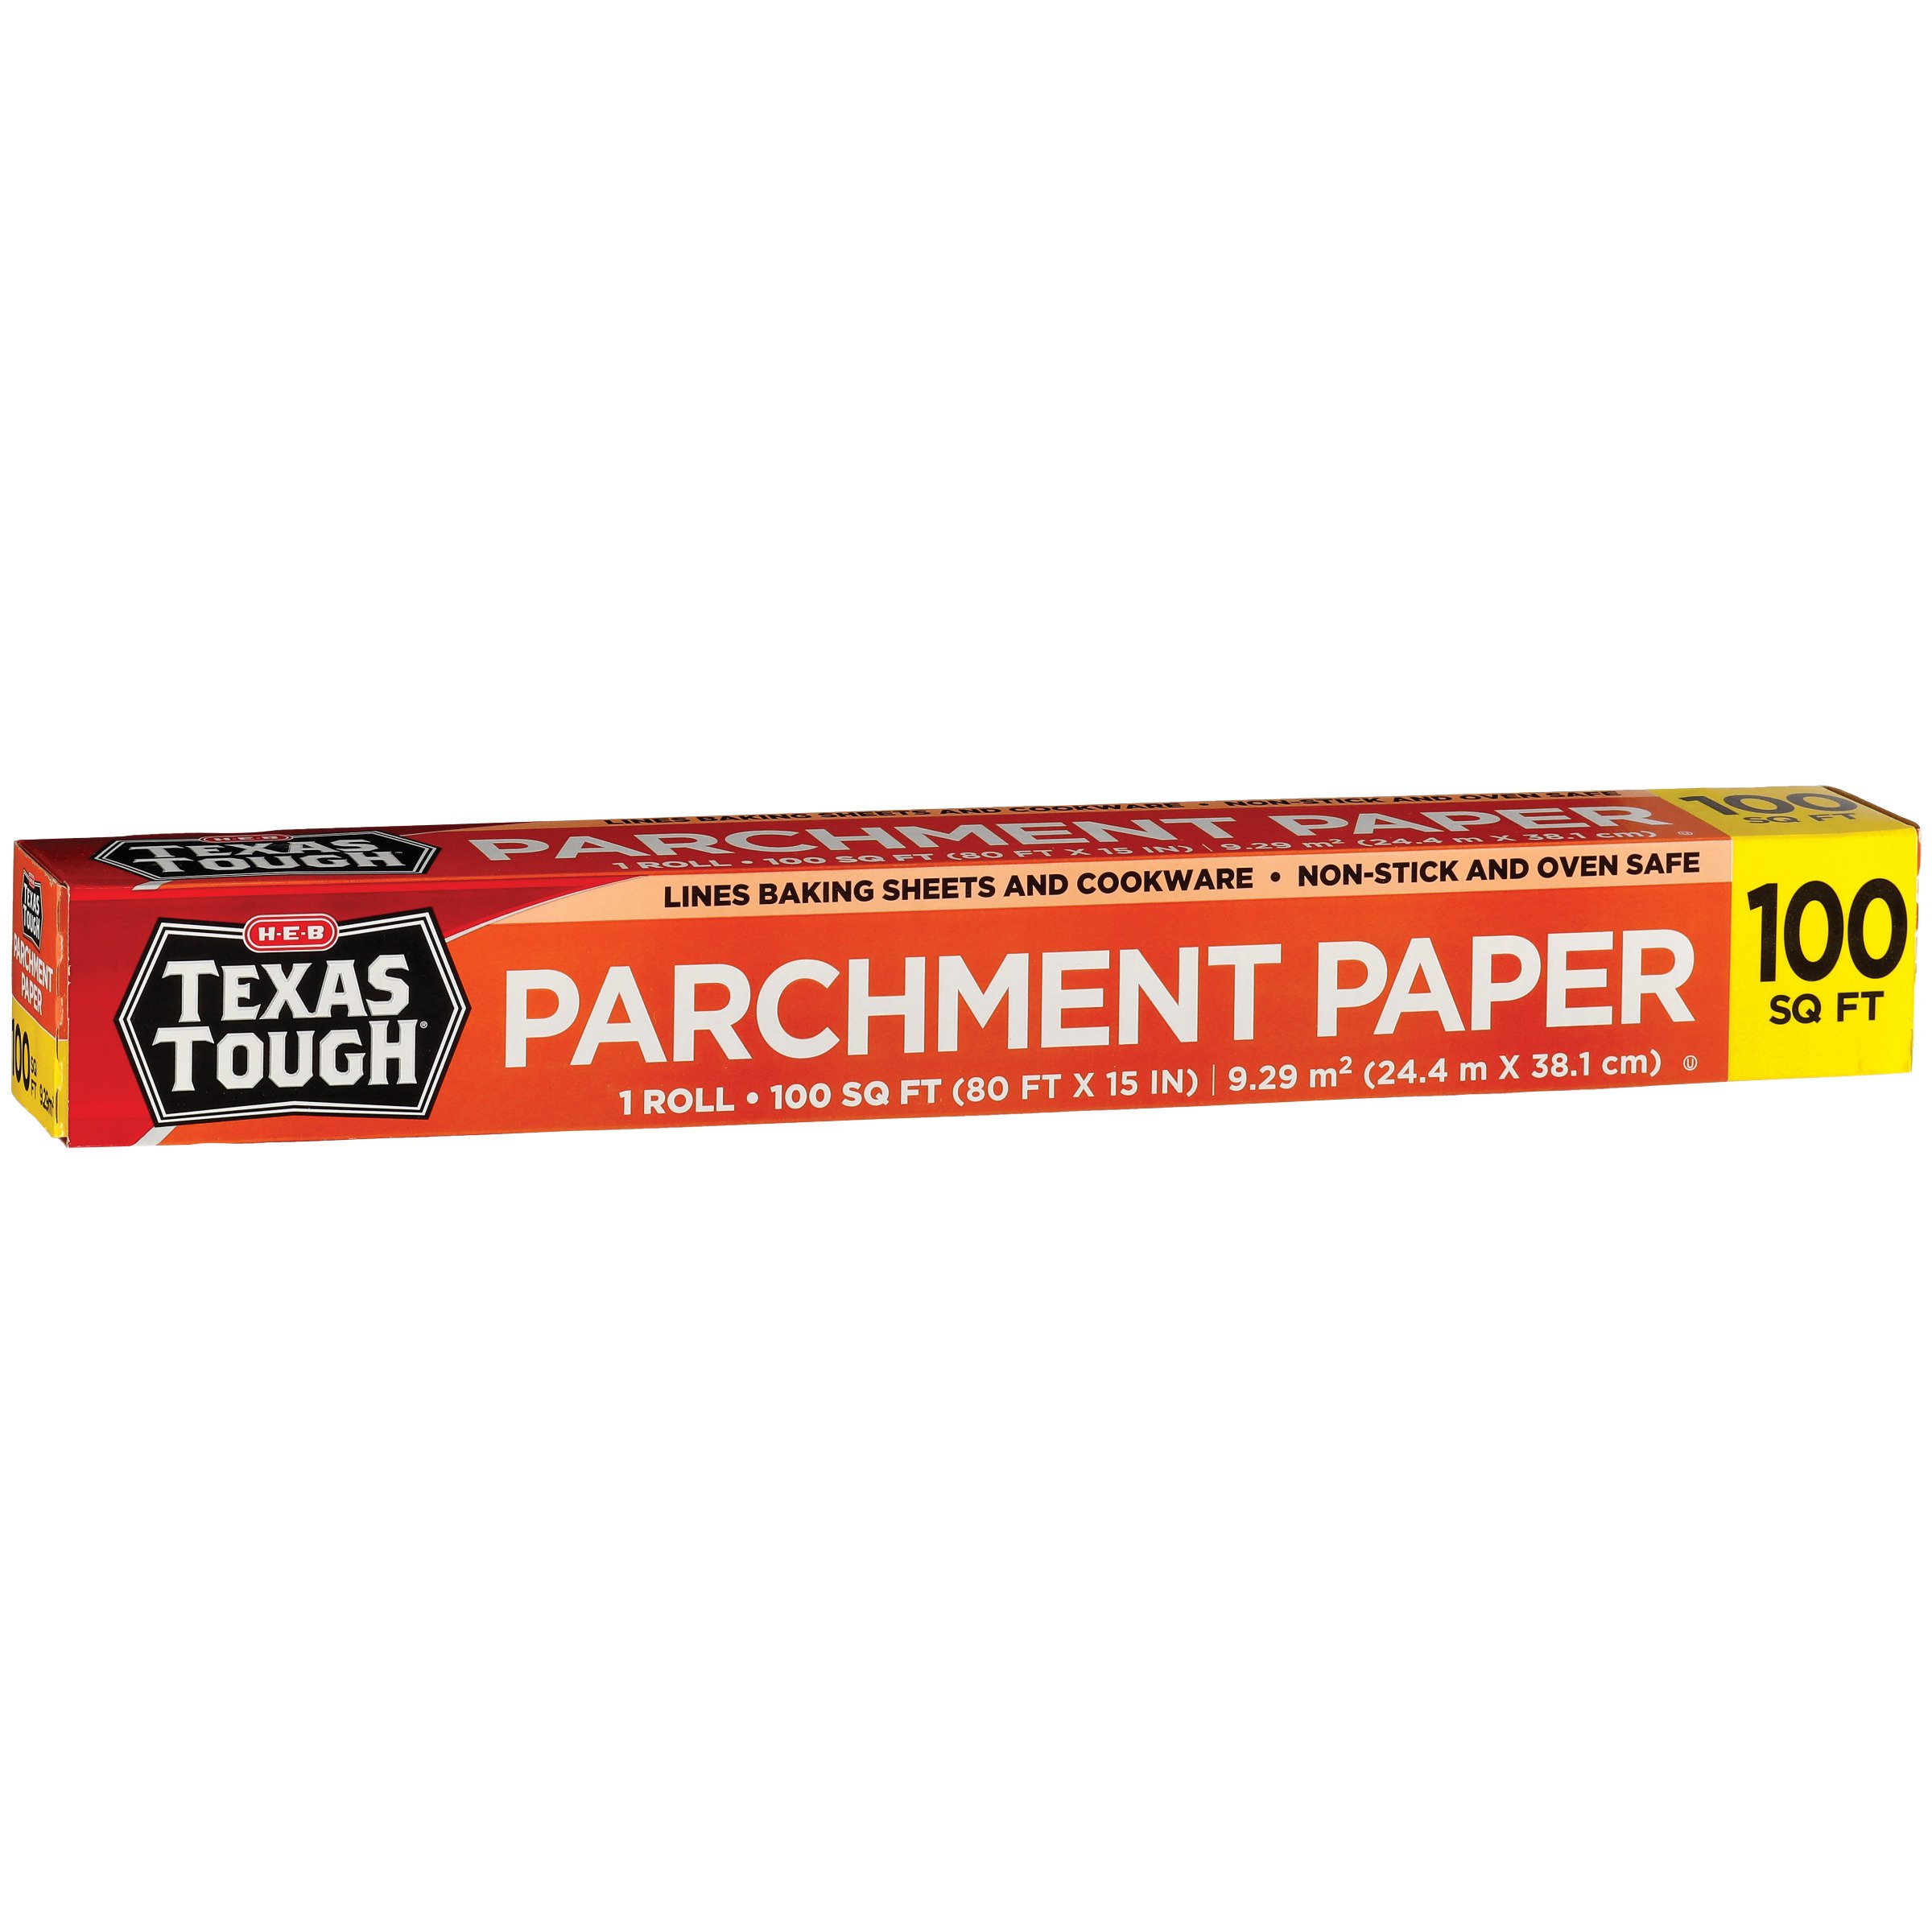 H-E-B Texas Tough Pre-Cut Parchment Paper Sheets - Shop Baking